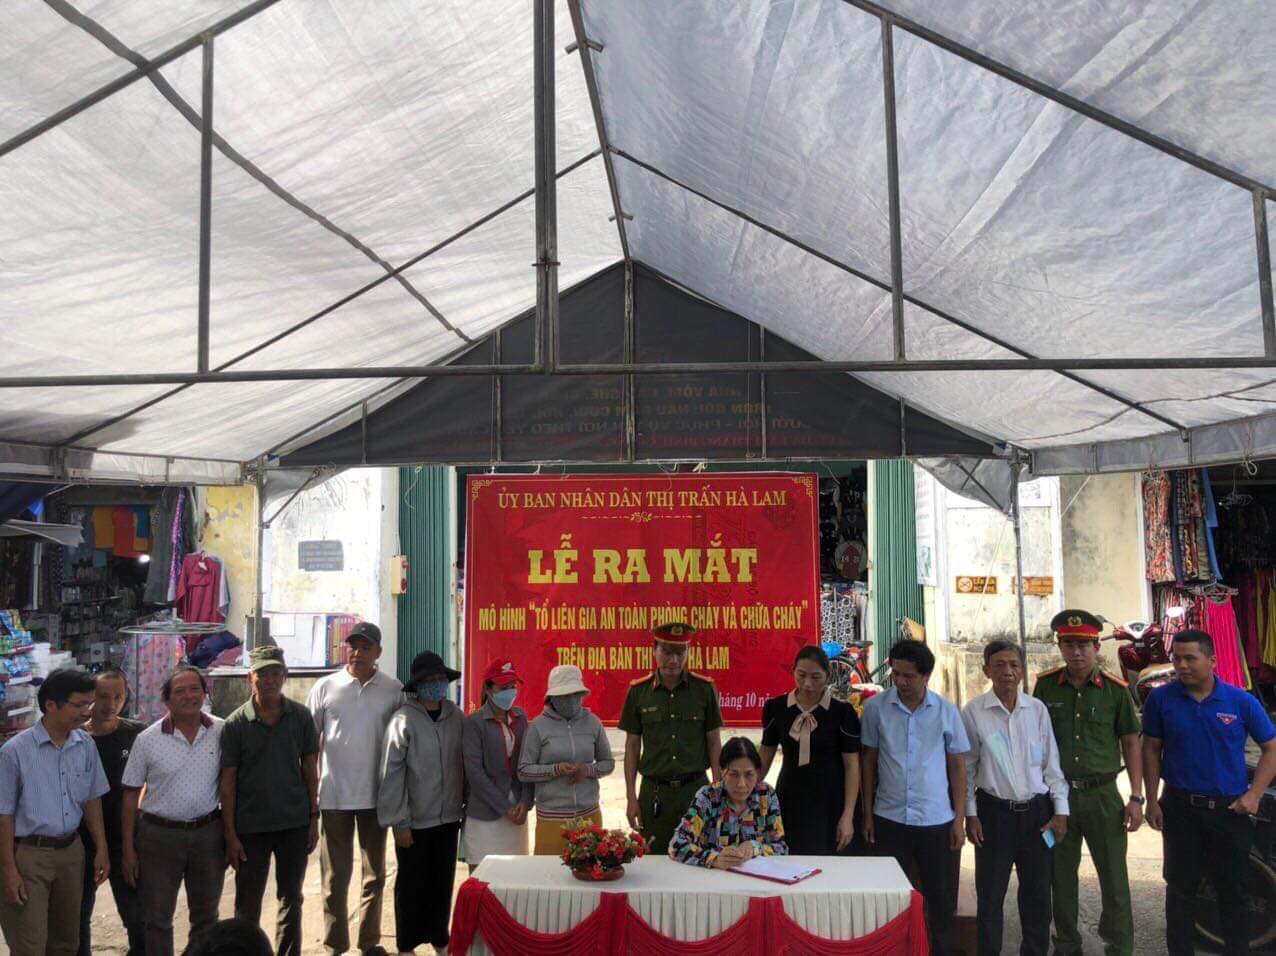 Hà Lam tổ chức Lễ ra mắt mô hình “ Tổ liên gia an toàn phòng cháy và chữa cháy” trên địa bàn thị trấn Hà Lam